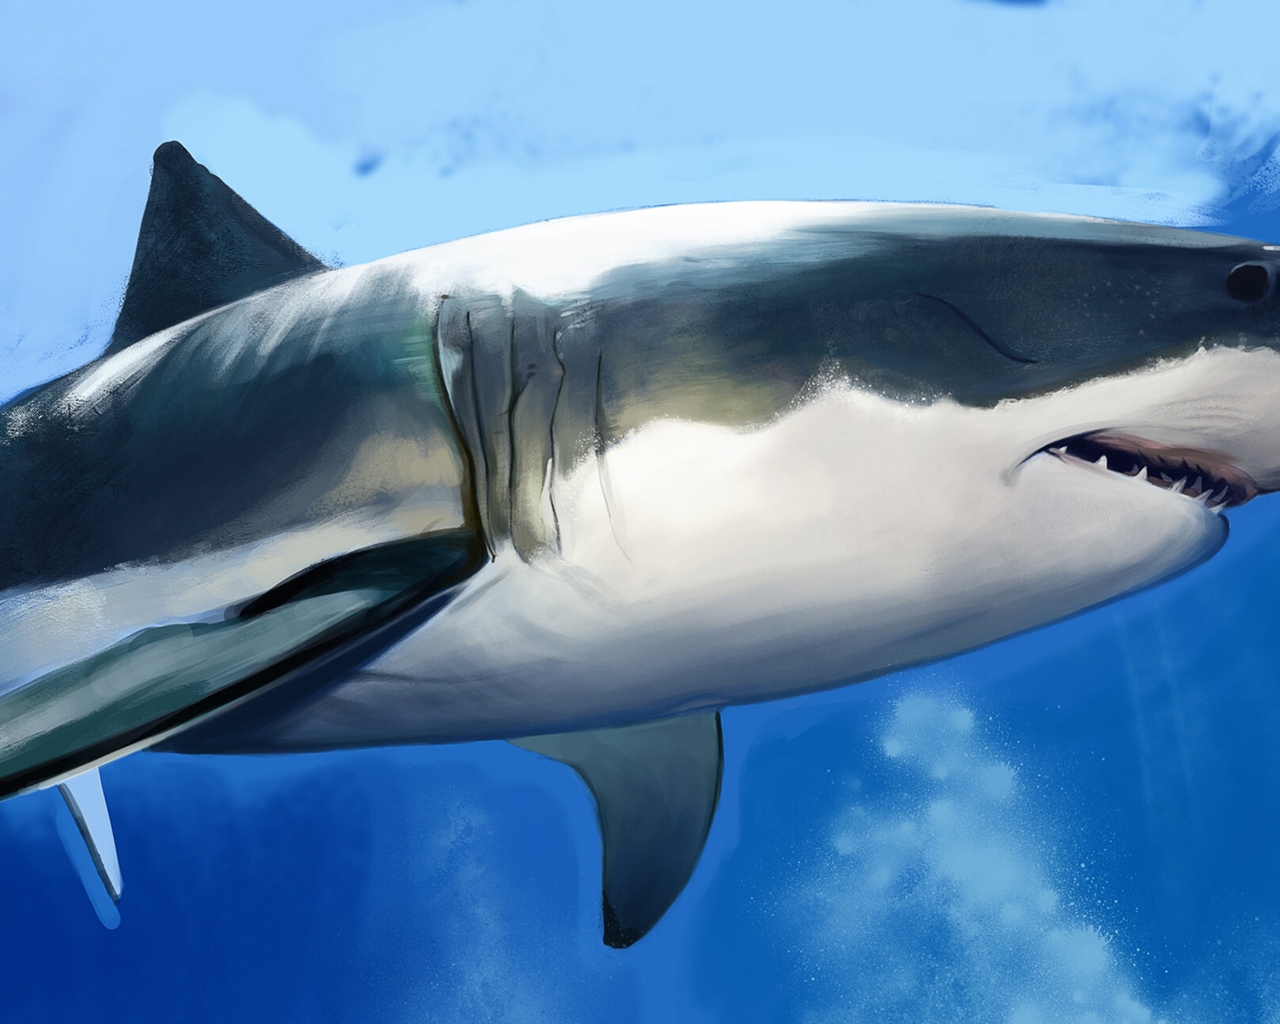 Картинка: Тёмная акула, рыба, хищник, брюхо, плавники, зубы